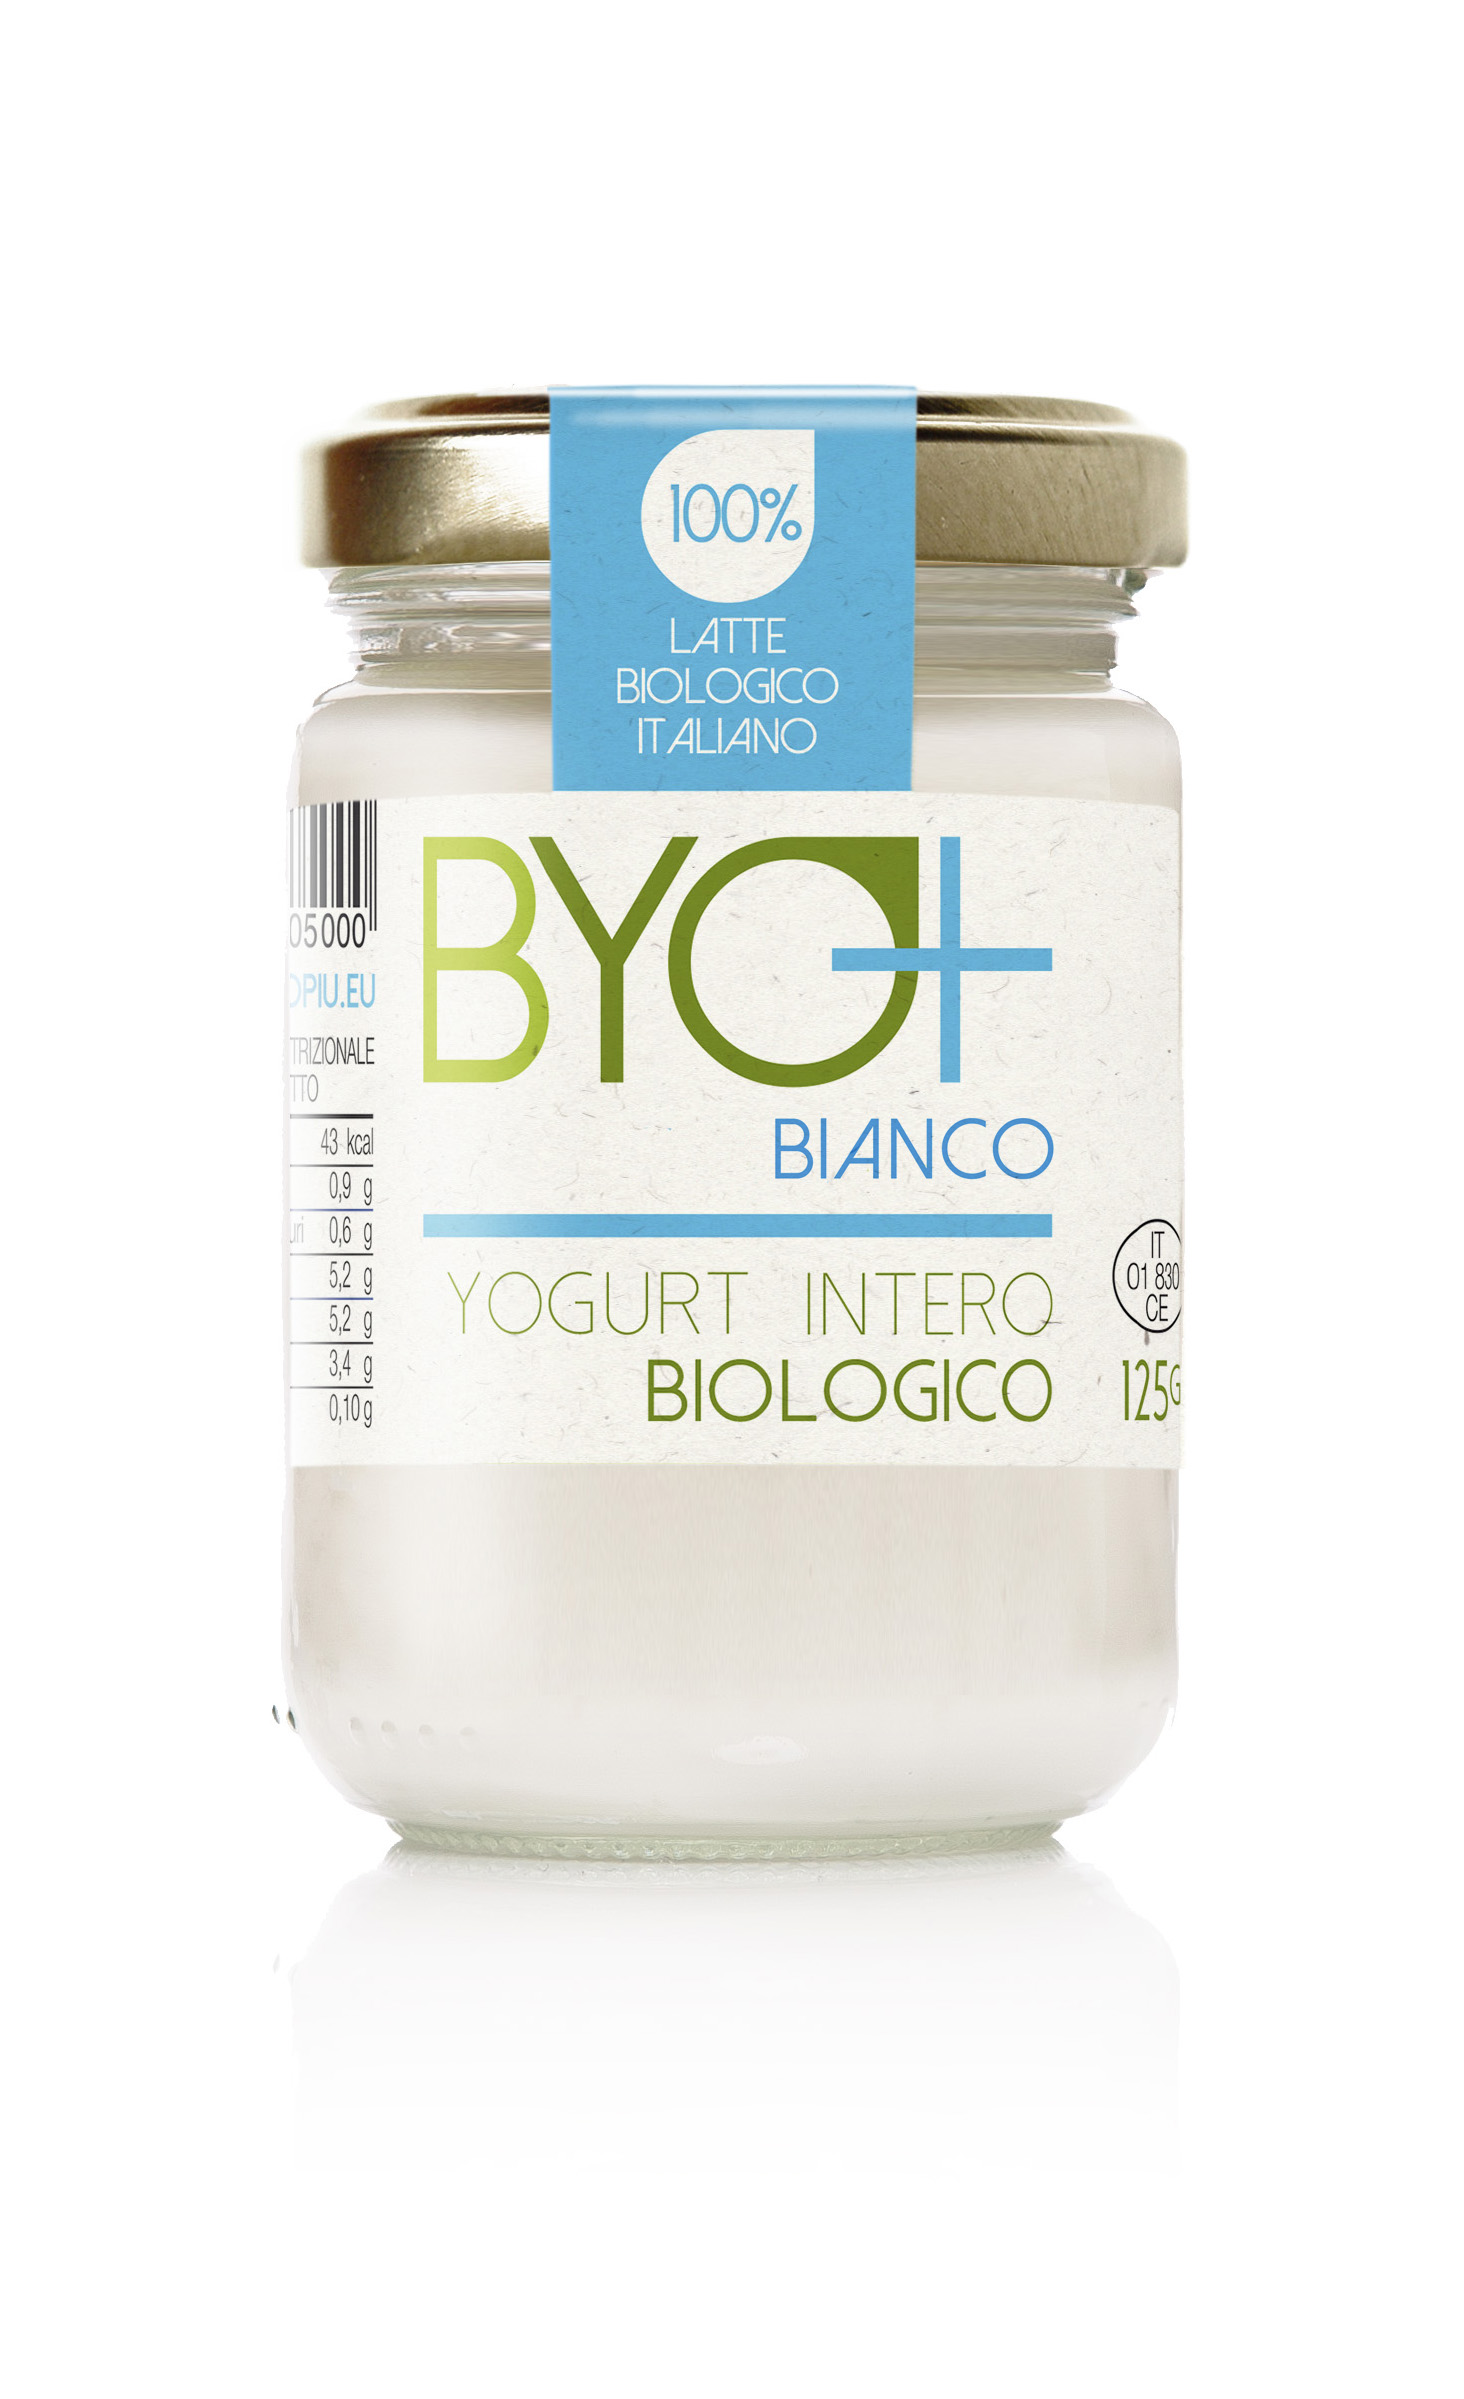 Byo+_Yogurt intero biologico 125g-bianco